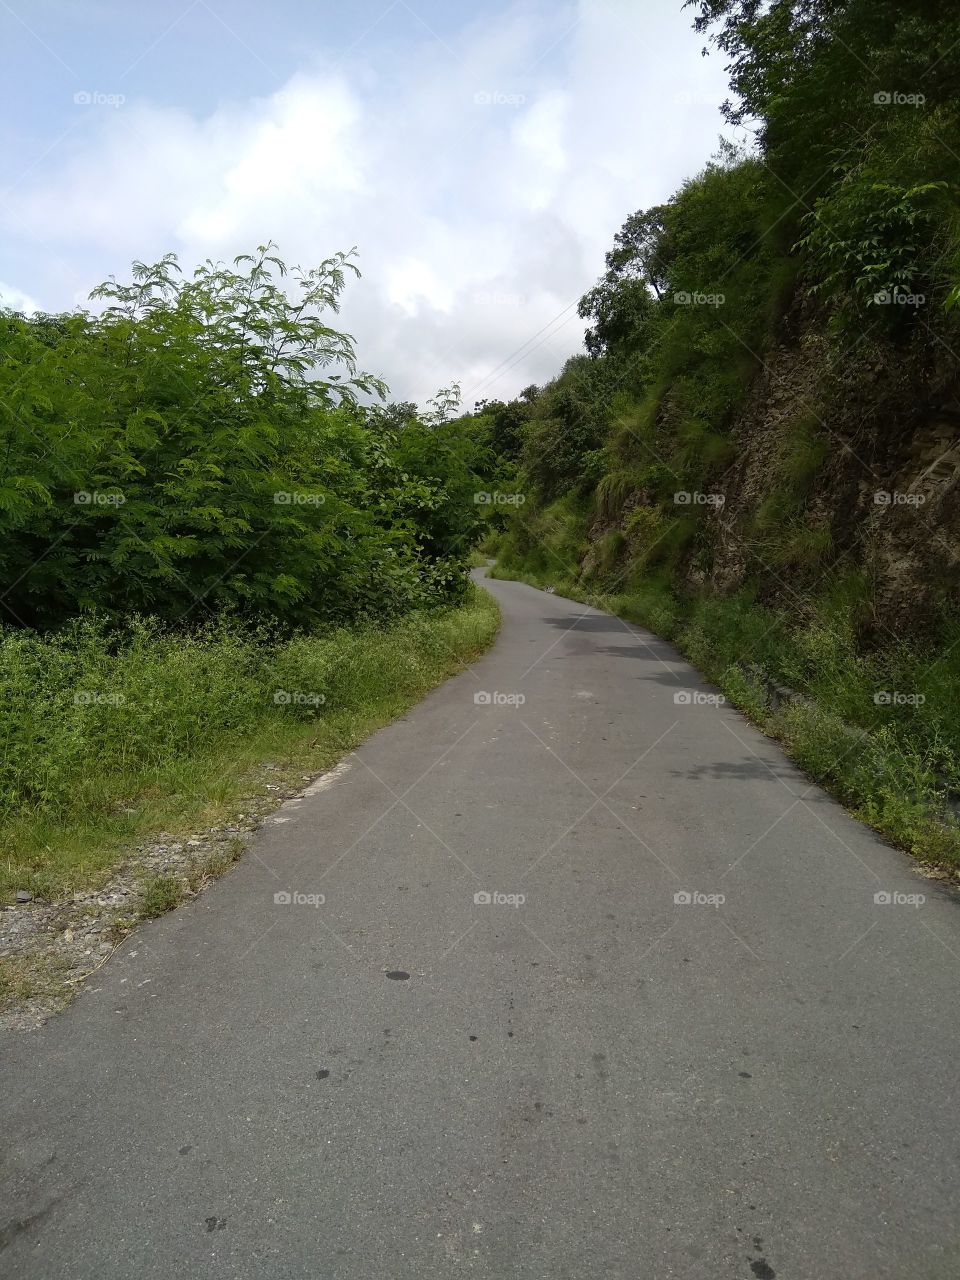 a road